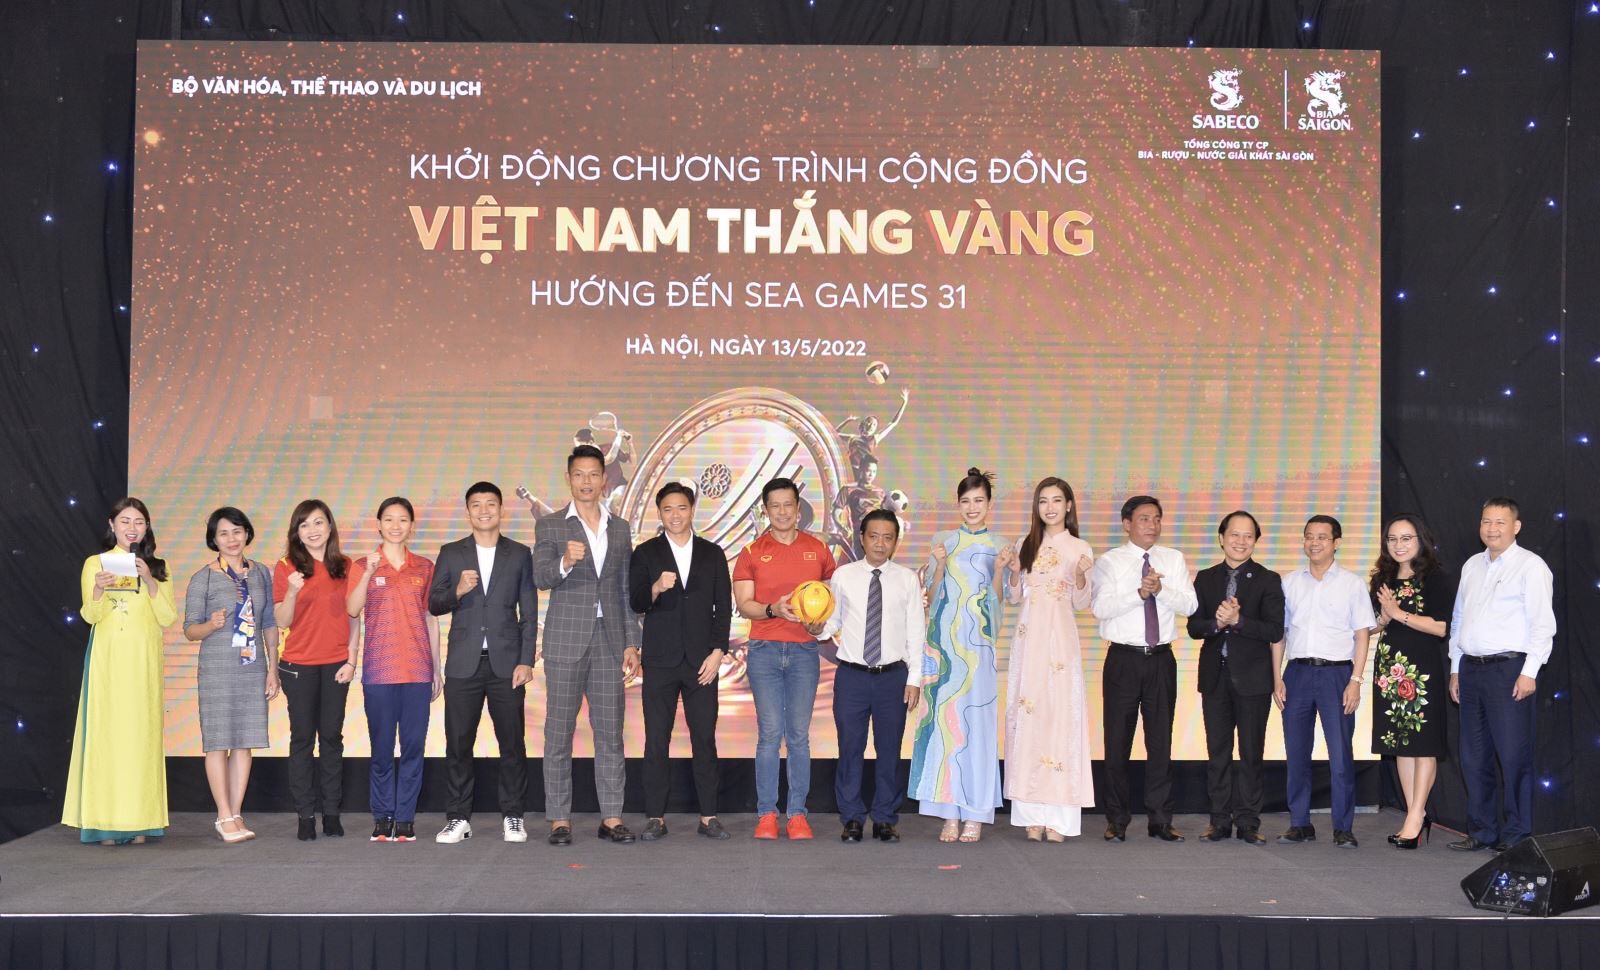 Khởi động chương trình, đại diện Bộ VHTTDL, đại diện Bia Saigon cùng với đại diện các nghệ sĩ ủng hộ chiến dịch đã cùng nhau hô vang khẩu hiệu 